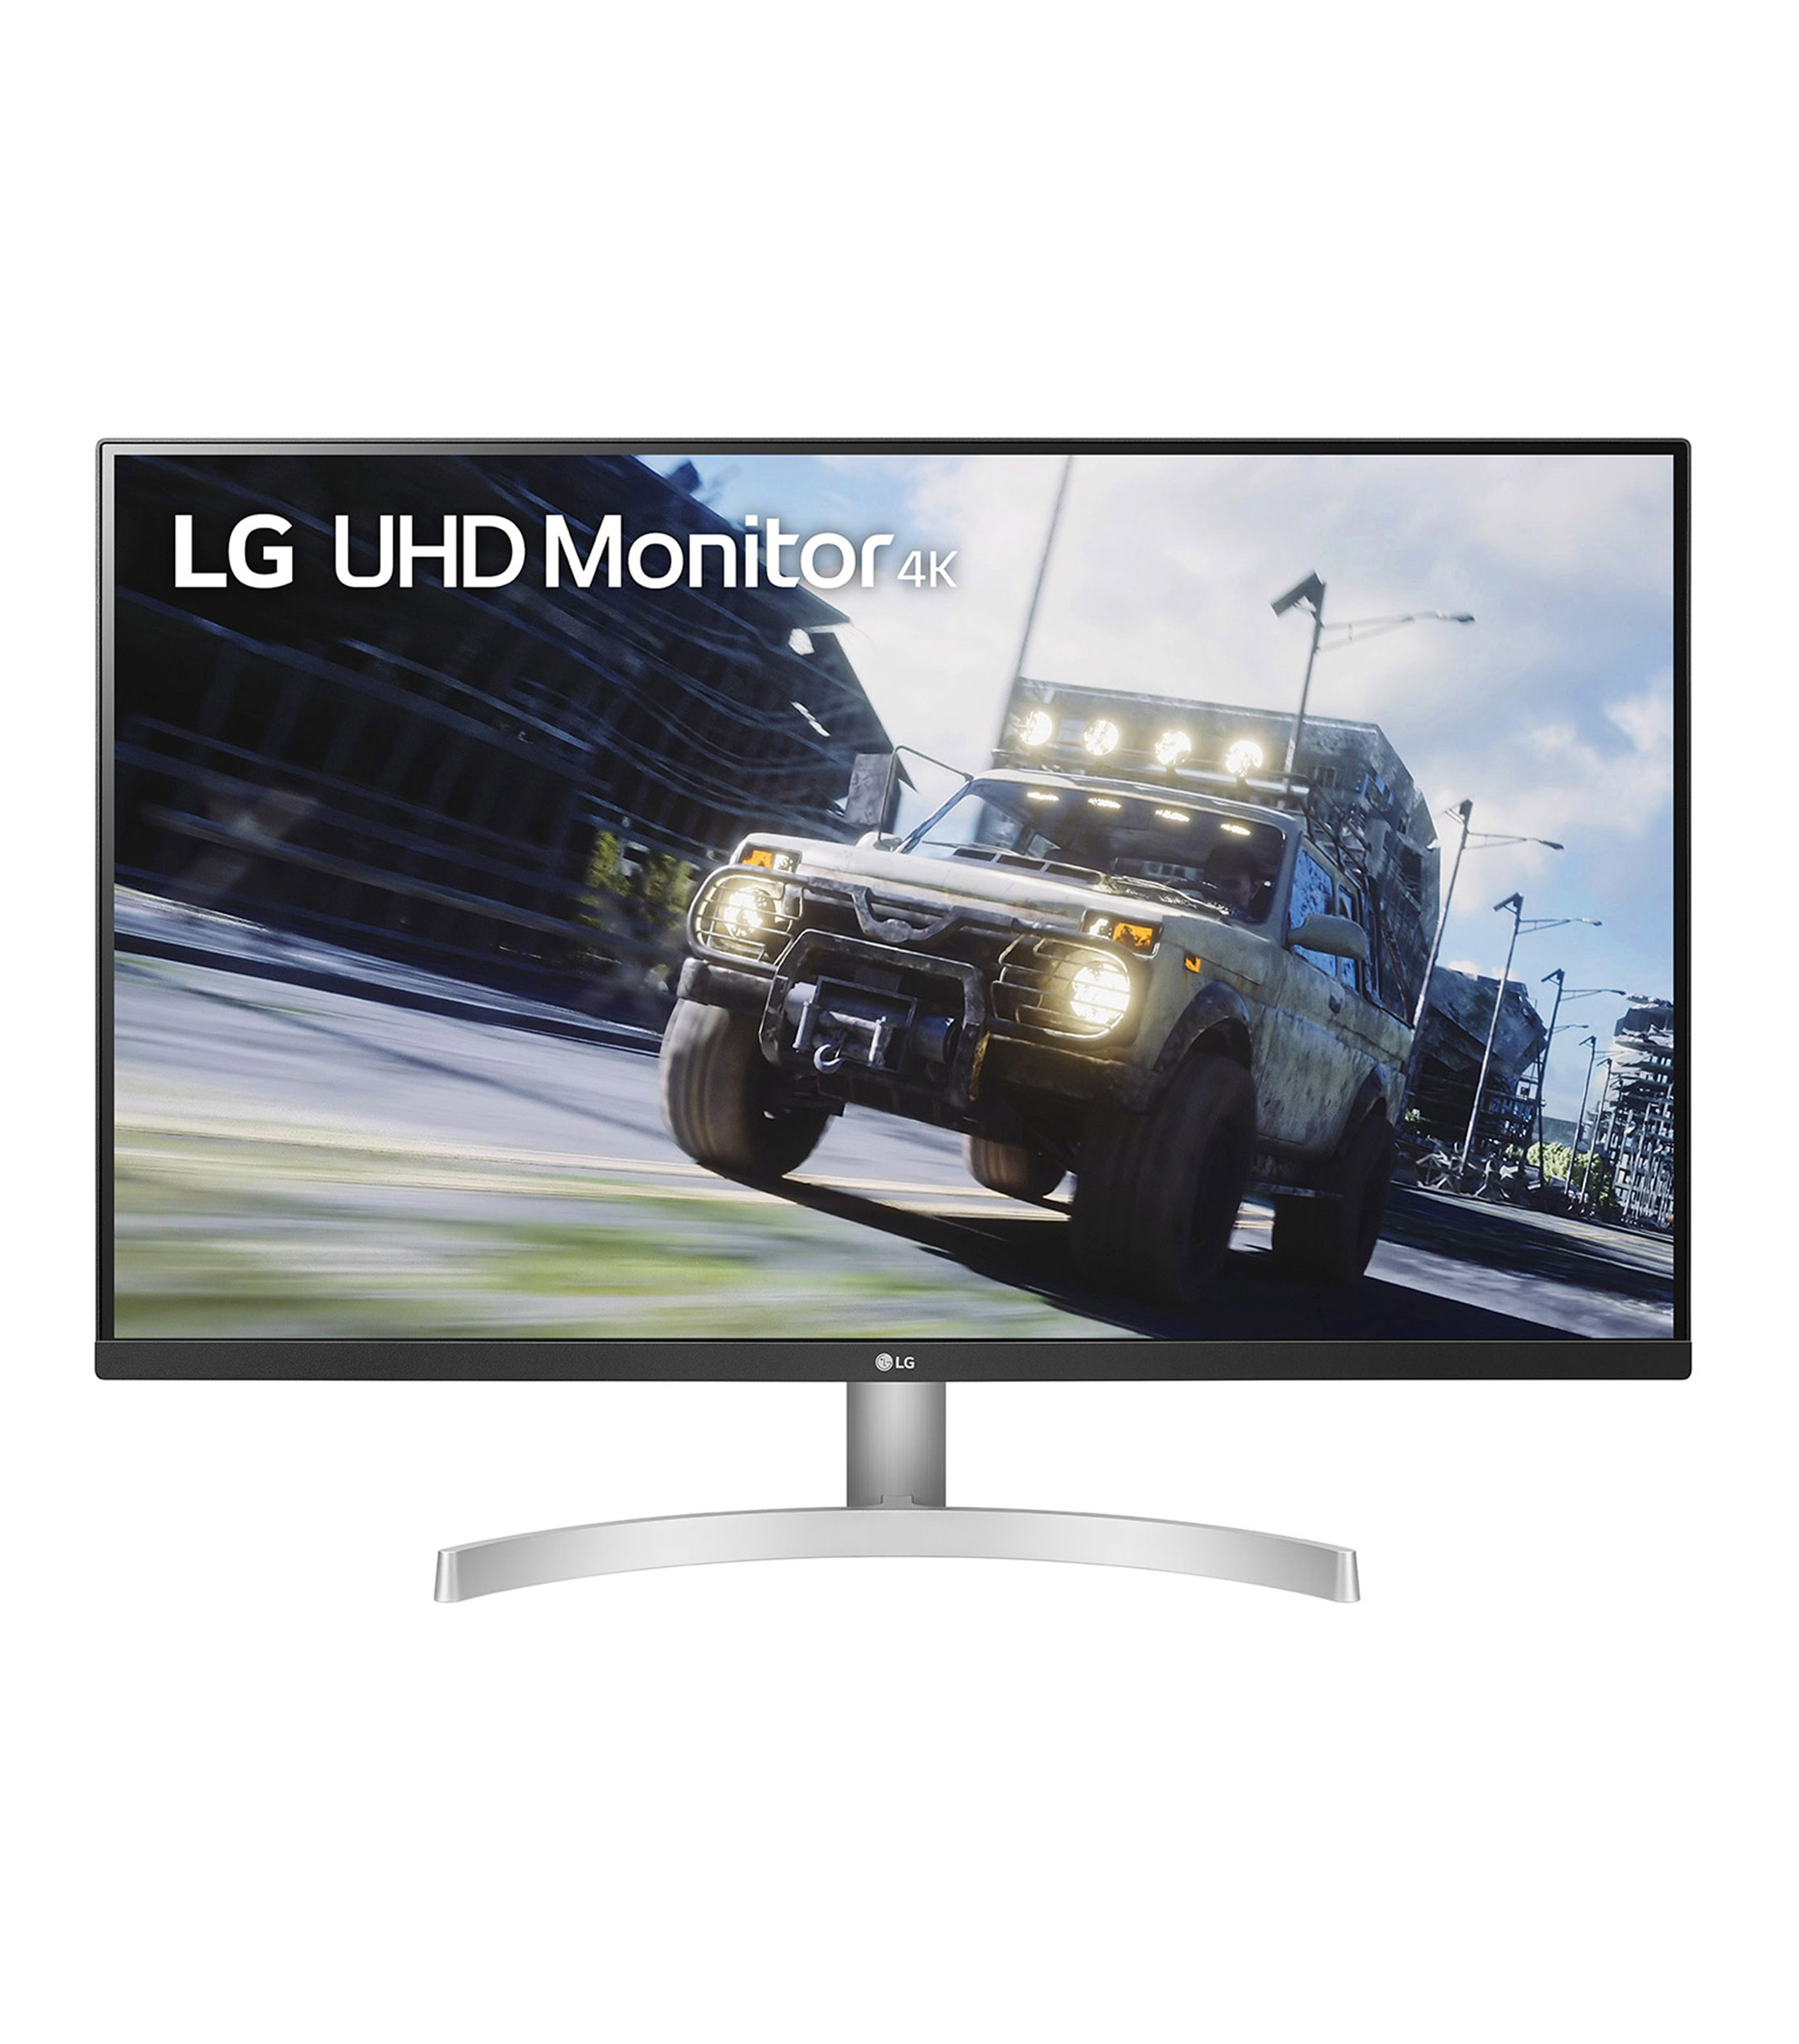 Monitor de negocios y juegos LG de 32 pulgadas 4K UHD (3840 x 2160),  pantalla VA de 60 Hz con AMD FreeSync, altavoz incluido, DCI-P3 95% gama de